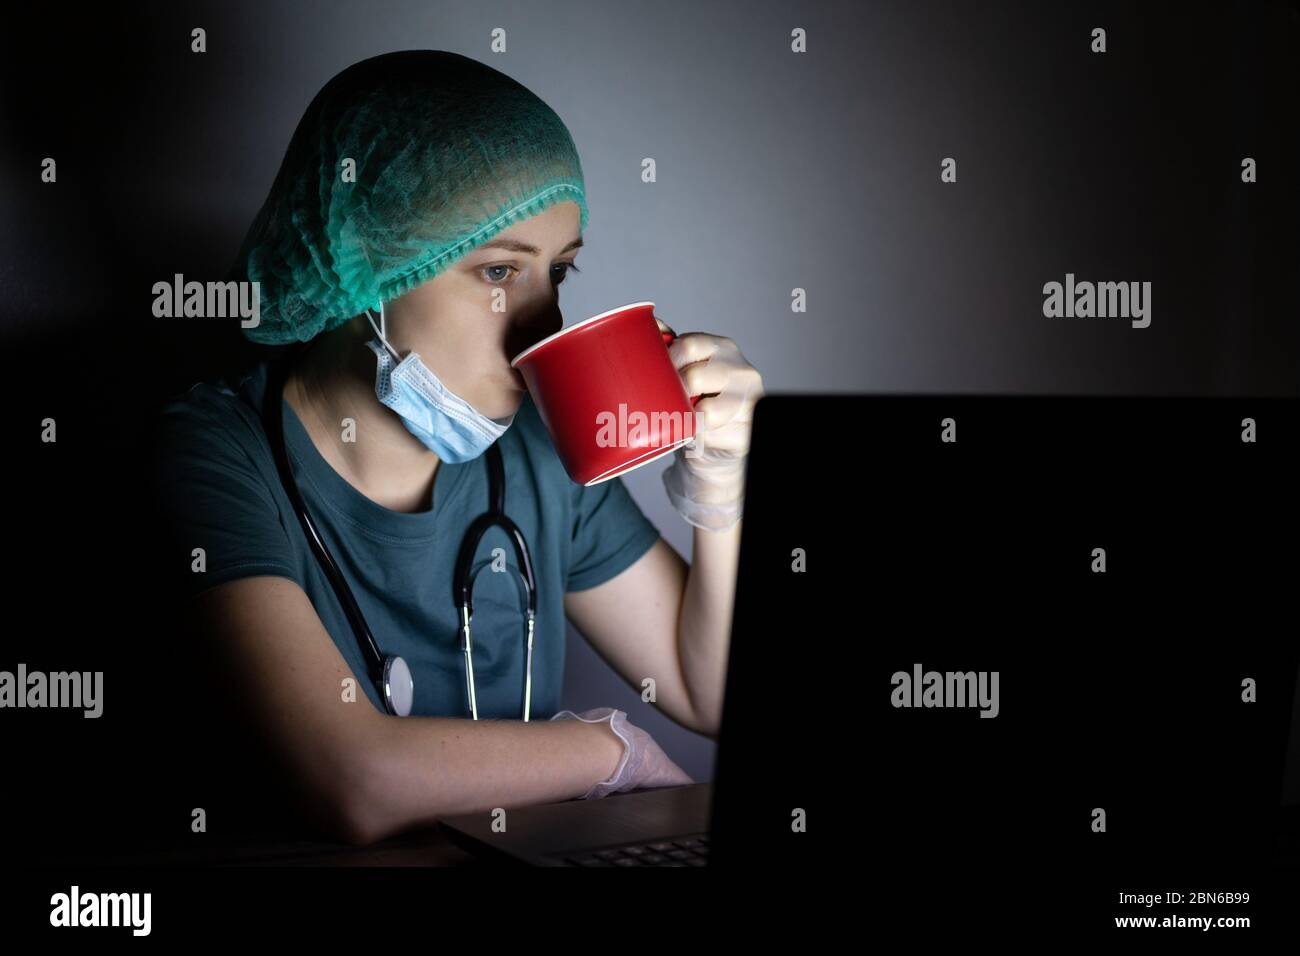 Femme caucasienne médecin infirmière dans le masque chirurgical semble fatigué, épuisé la nuit à cause de covid Banque D'Images